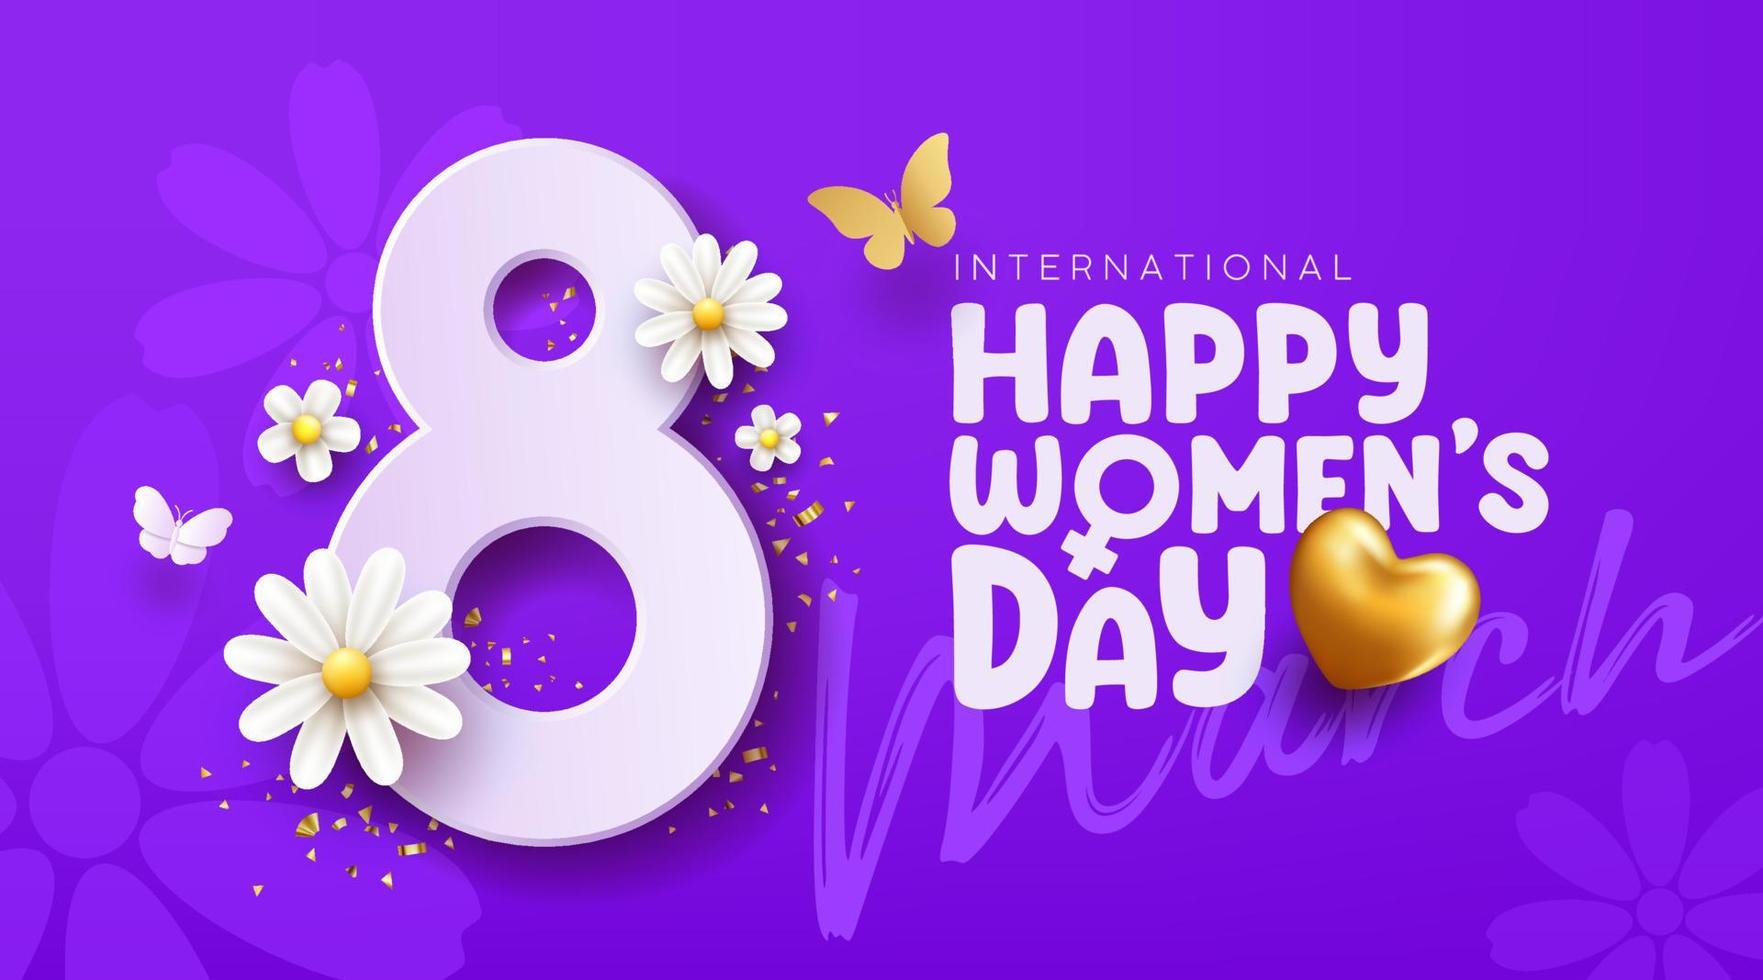 8 marzo contento De las mujeres día con blanco flores y mariposa, oro corazón, bandera concepto diseño en púrpura fondo, eps10 vector ilustración.